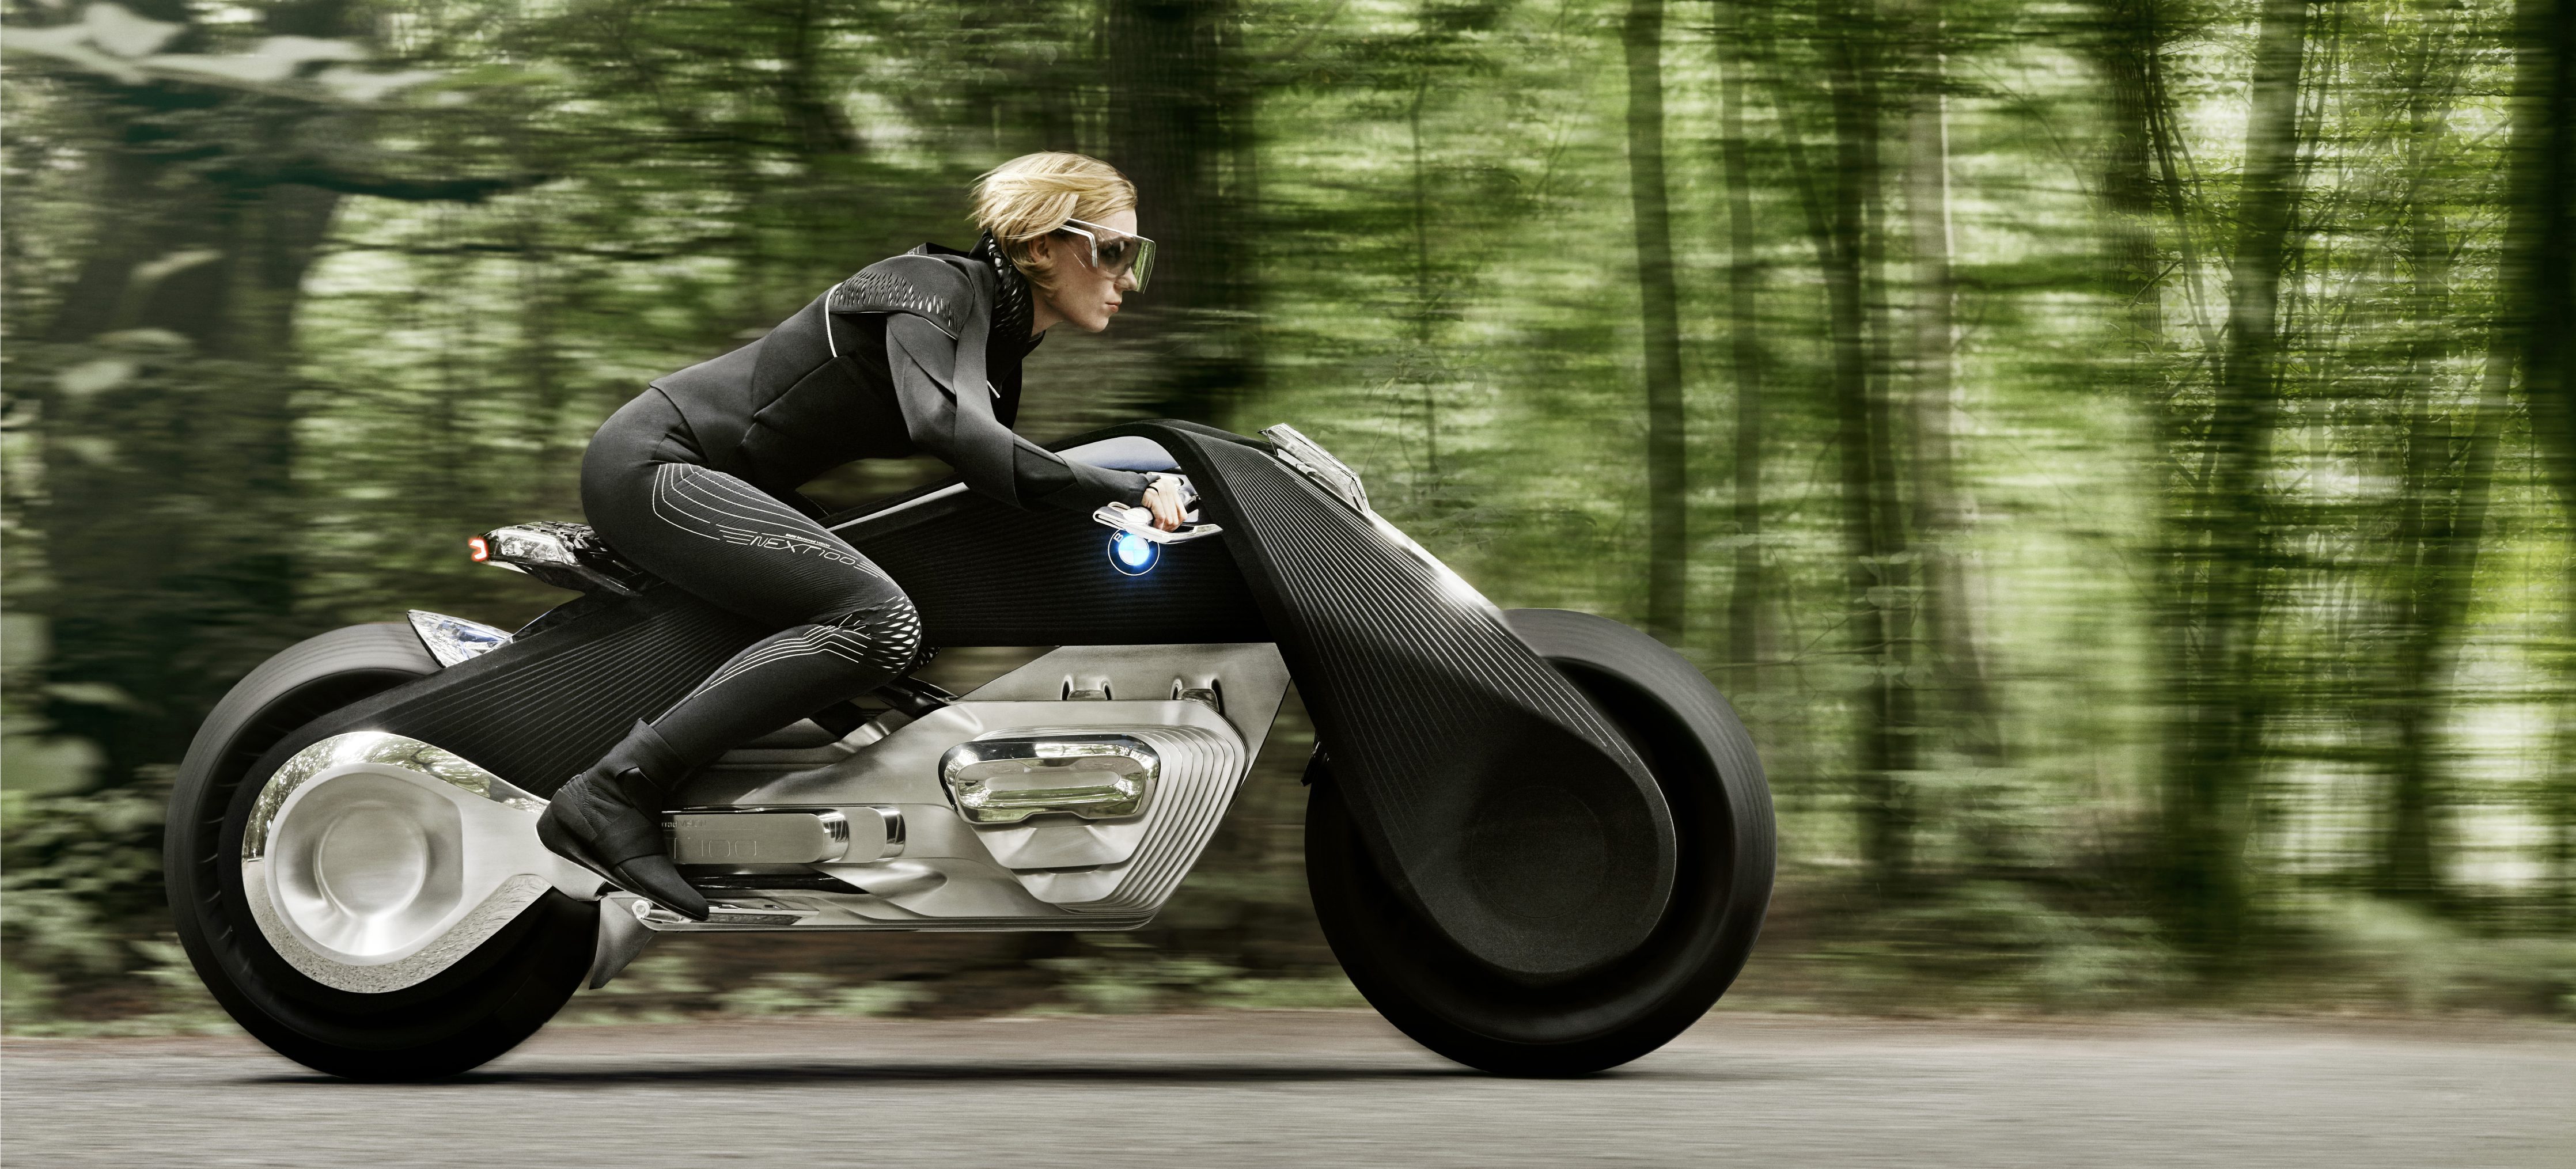 NEXT100 Vision : l'avenir du 2 roues selon BMW